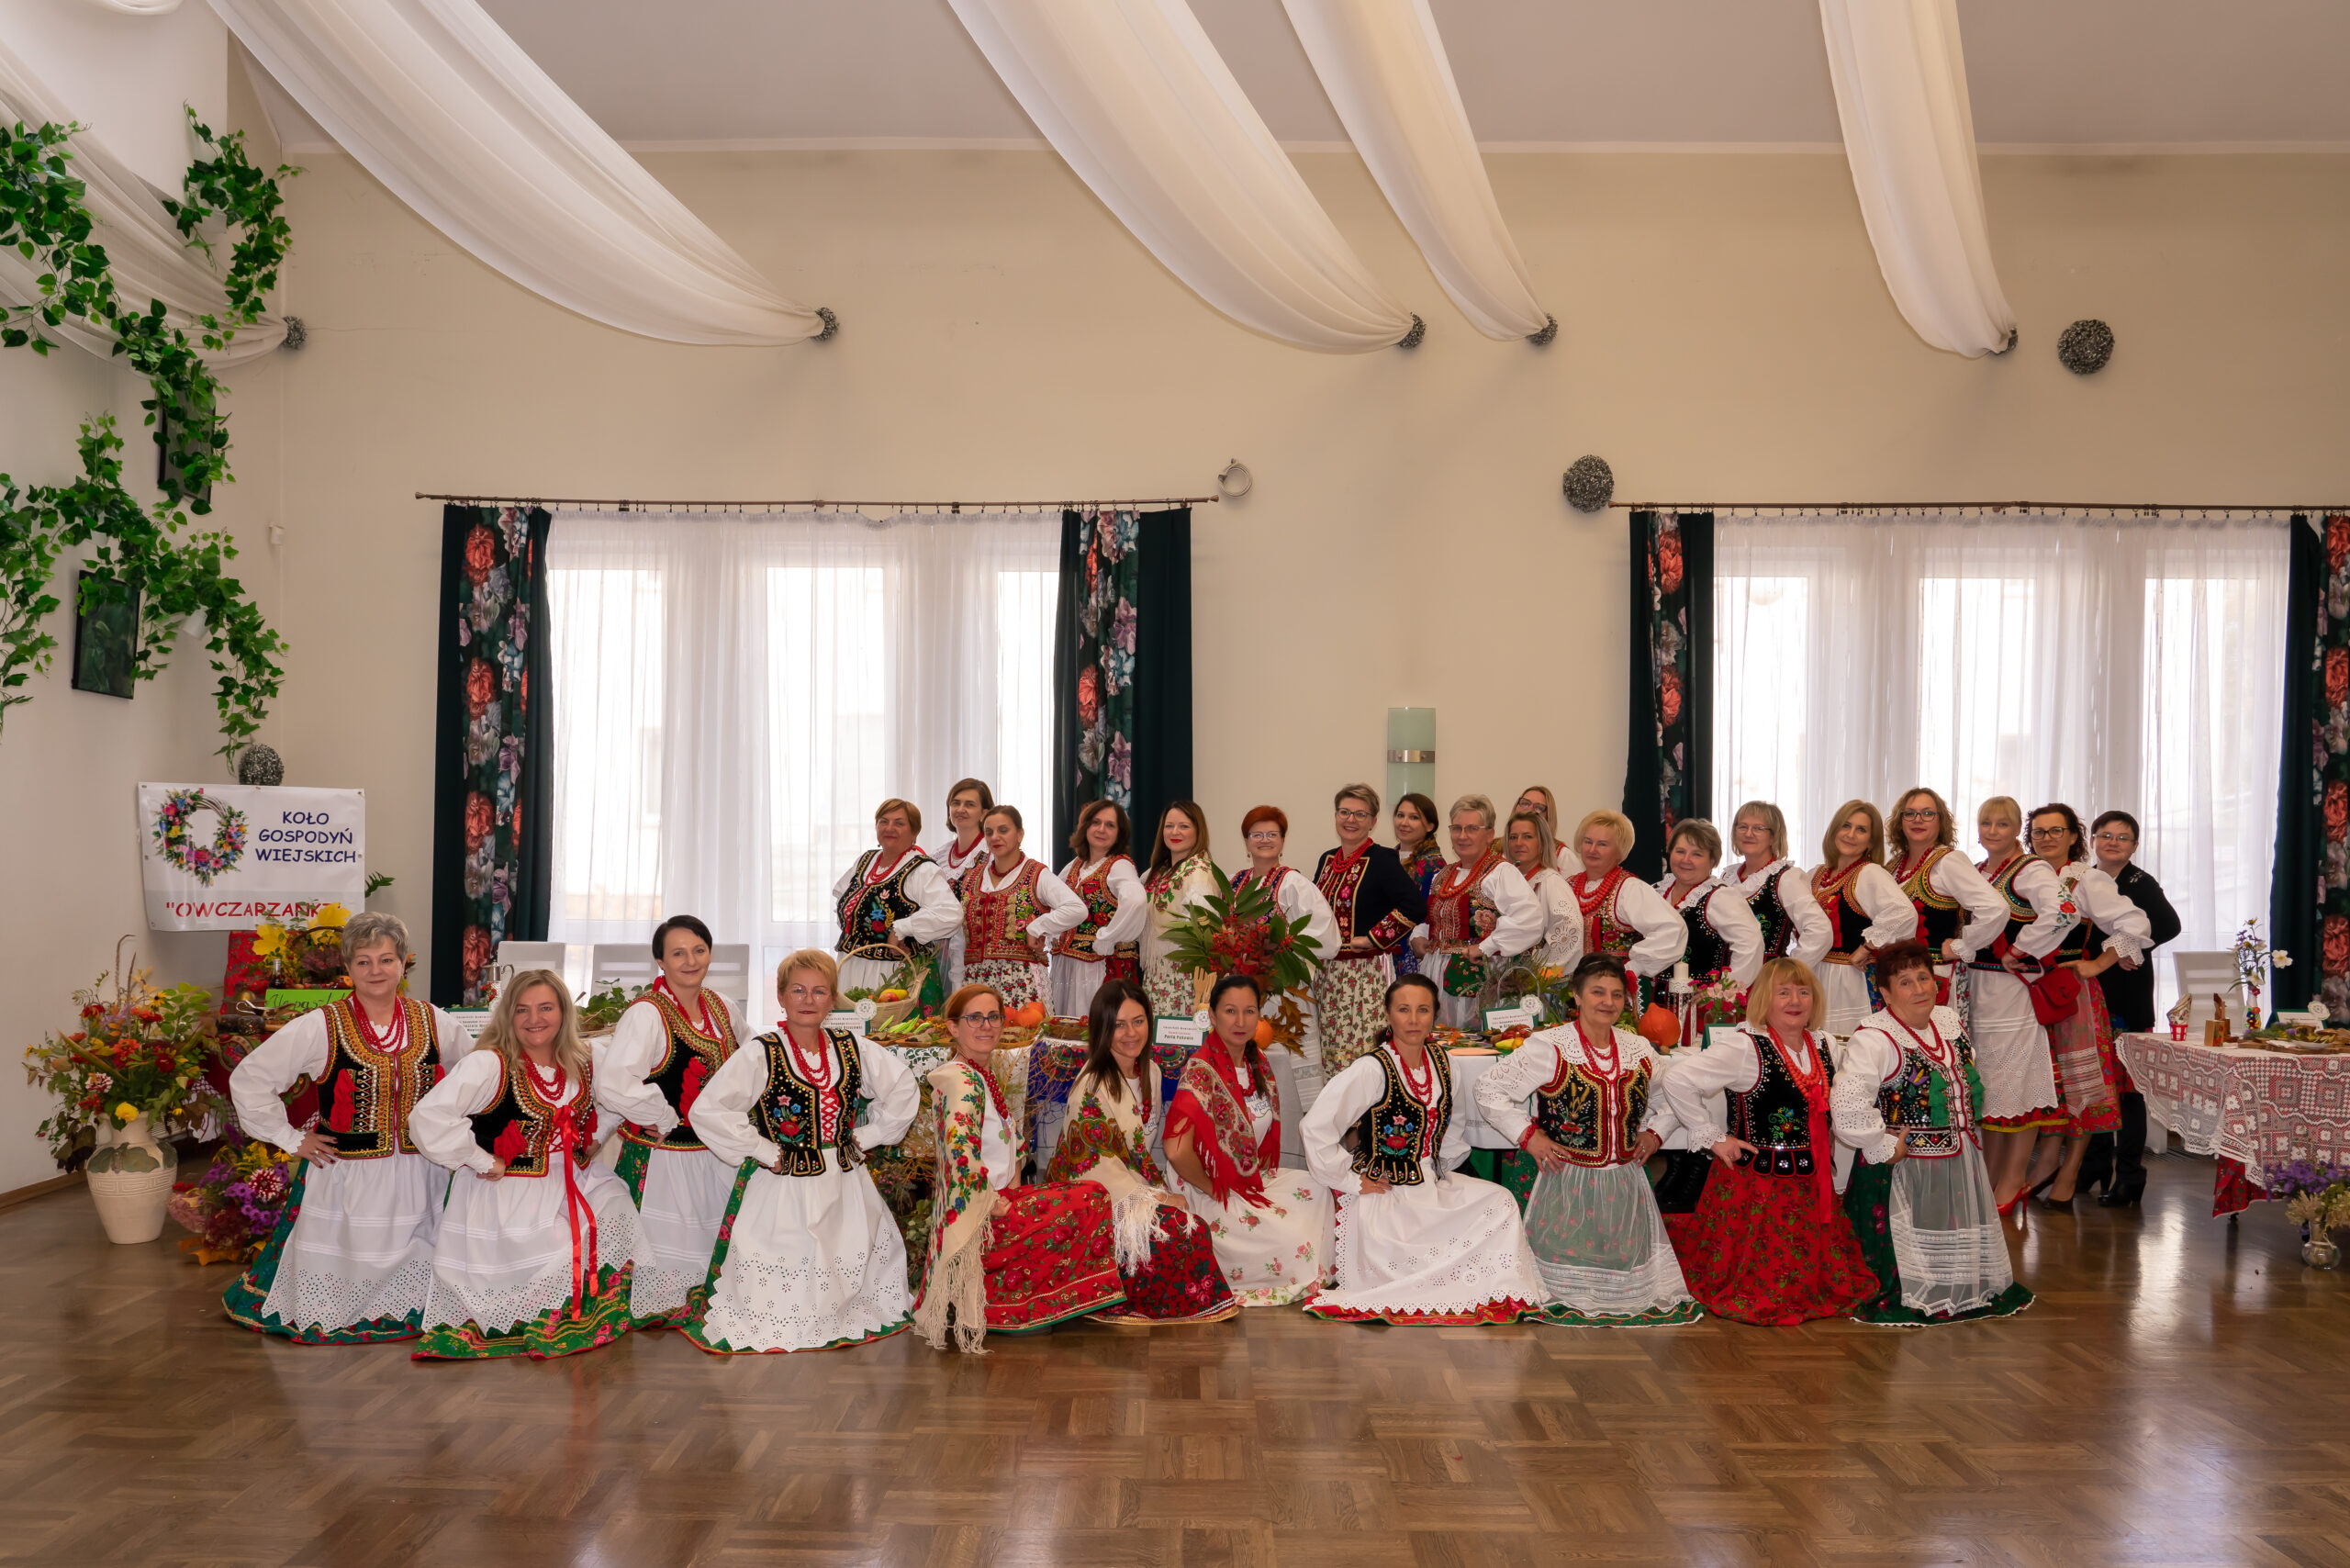 zdjęcie grupowe kobiet w strojach krakowskich